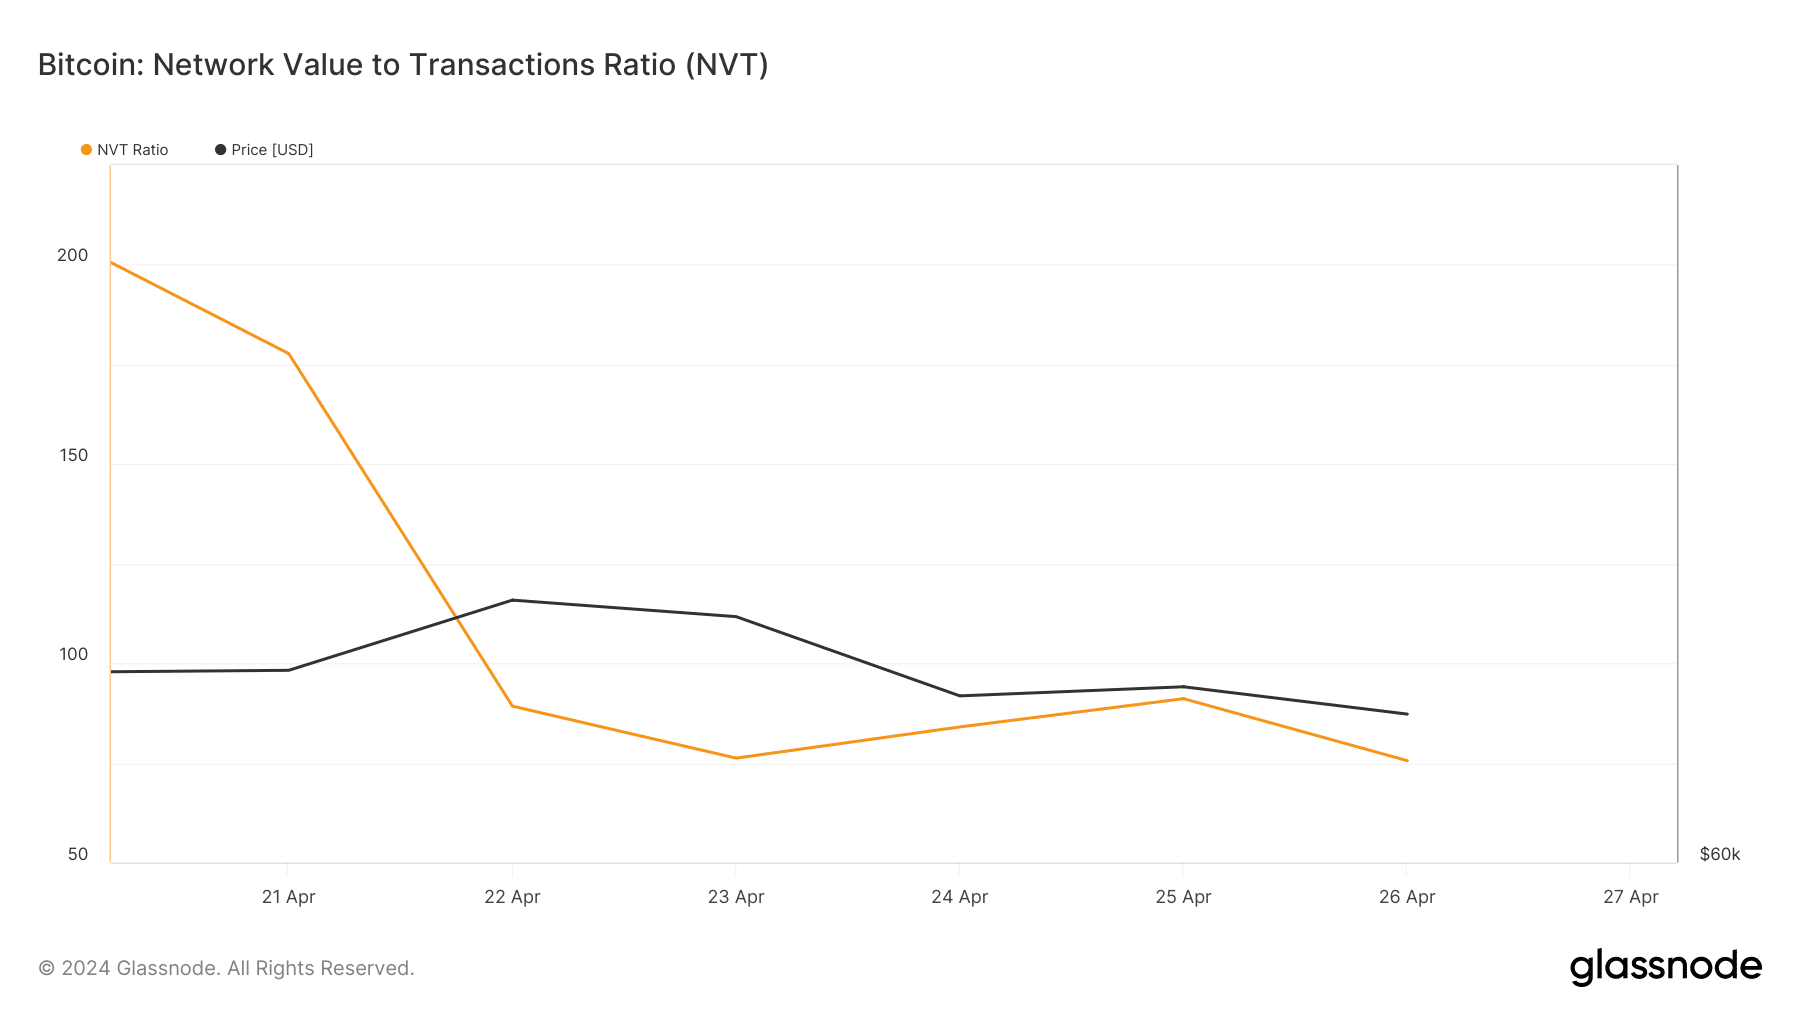 BTC's NVT ratio fell